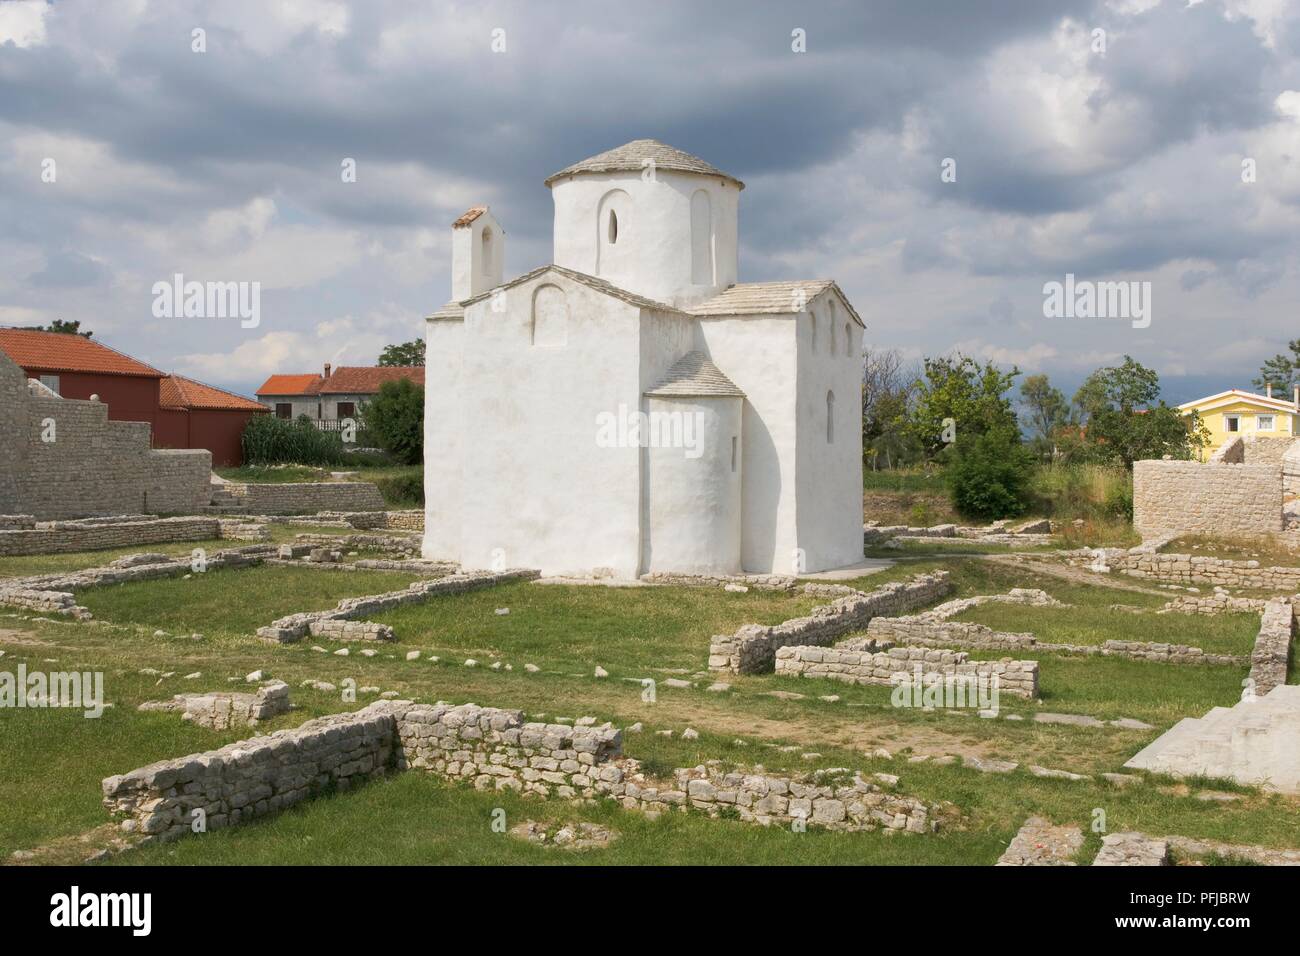 La Croatie, Nin, l'église de la Sainte Croix, extérieur blanc et les ruines des murs Banque D'Images